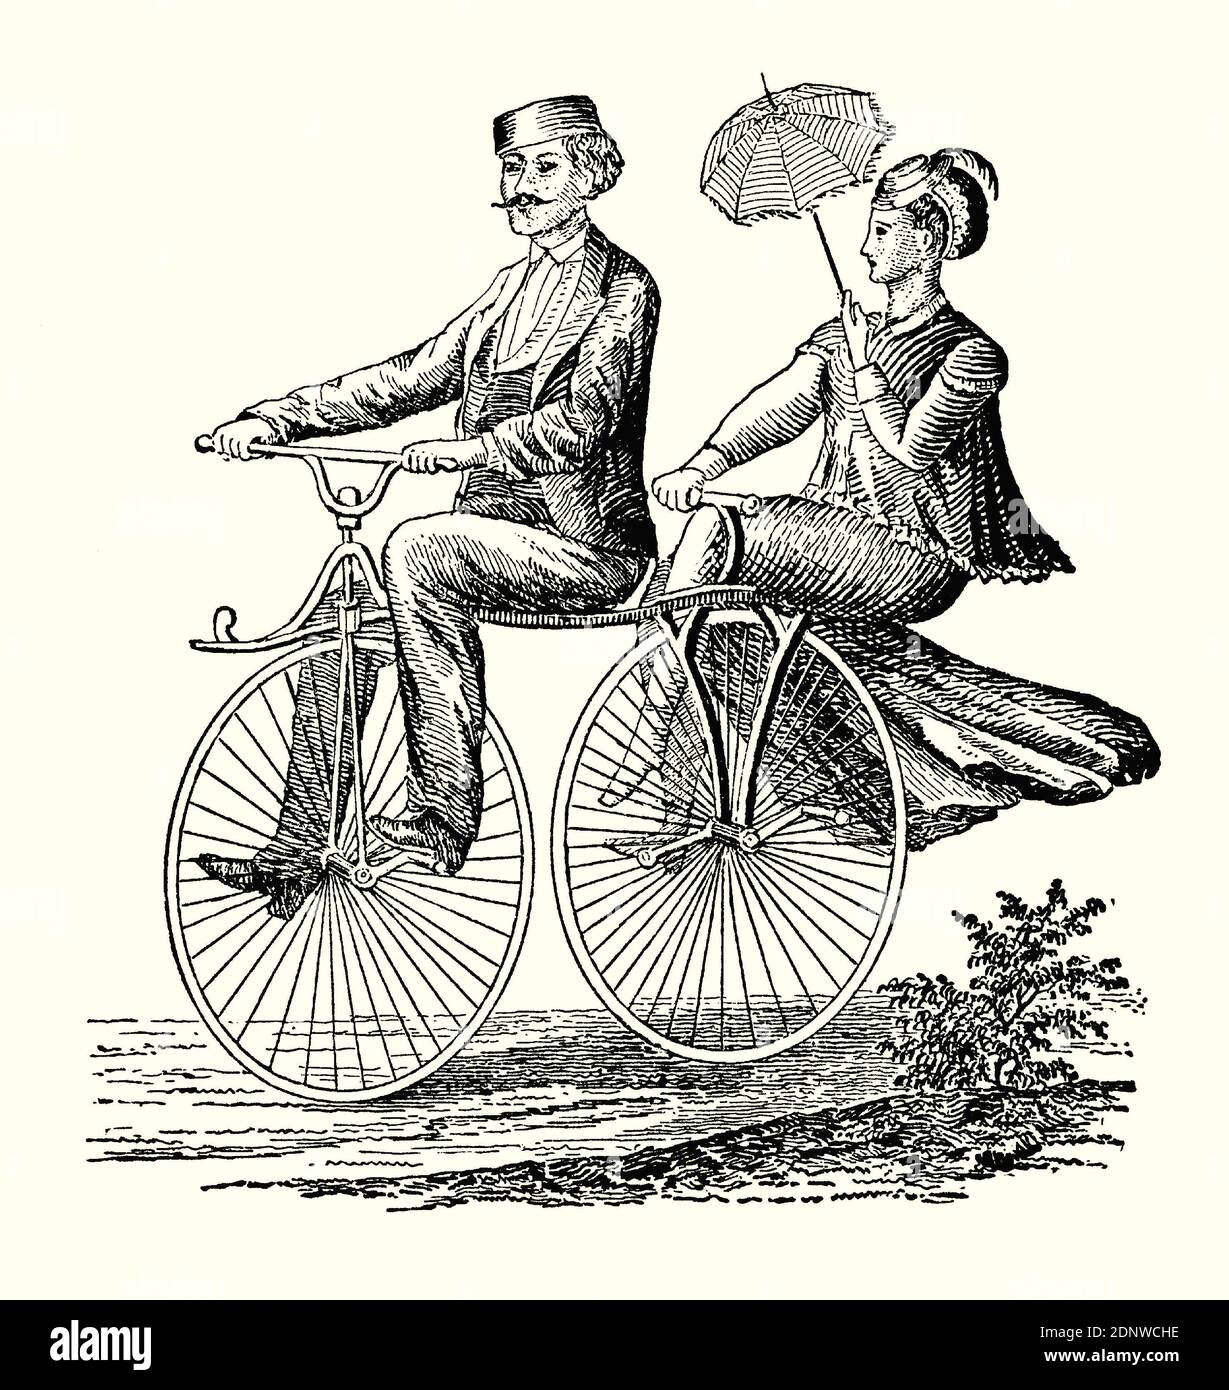 Una vecchia incisione di un uomo e di una donna che cavalcano una bicicletta in tandem nel 1800. E 'da un libro di ingegneria meccanica vittoriana del 1880. Questa divertente immagine ha la donna che tiene un ombrellone e si siede sul sedile posteriore della moto in una posizione laterale-sella – l'uomo forse sta facendo la maggior parte del peddling! Molti tipi di biciclette sono stati inventati durante l'epoca vittoriana – variando nel design da veramente utile a fantasioso e divertente. Foto Stock